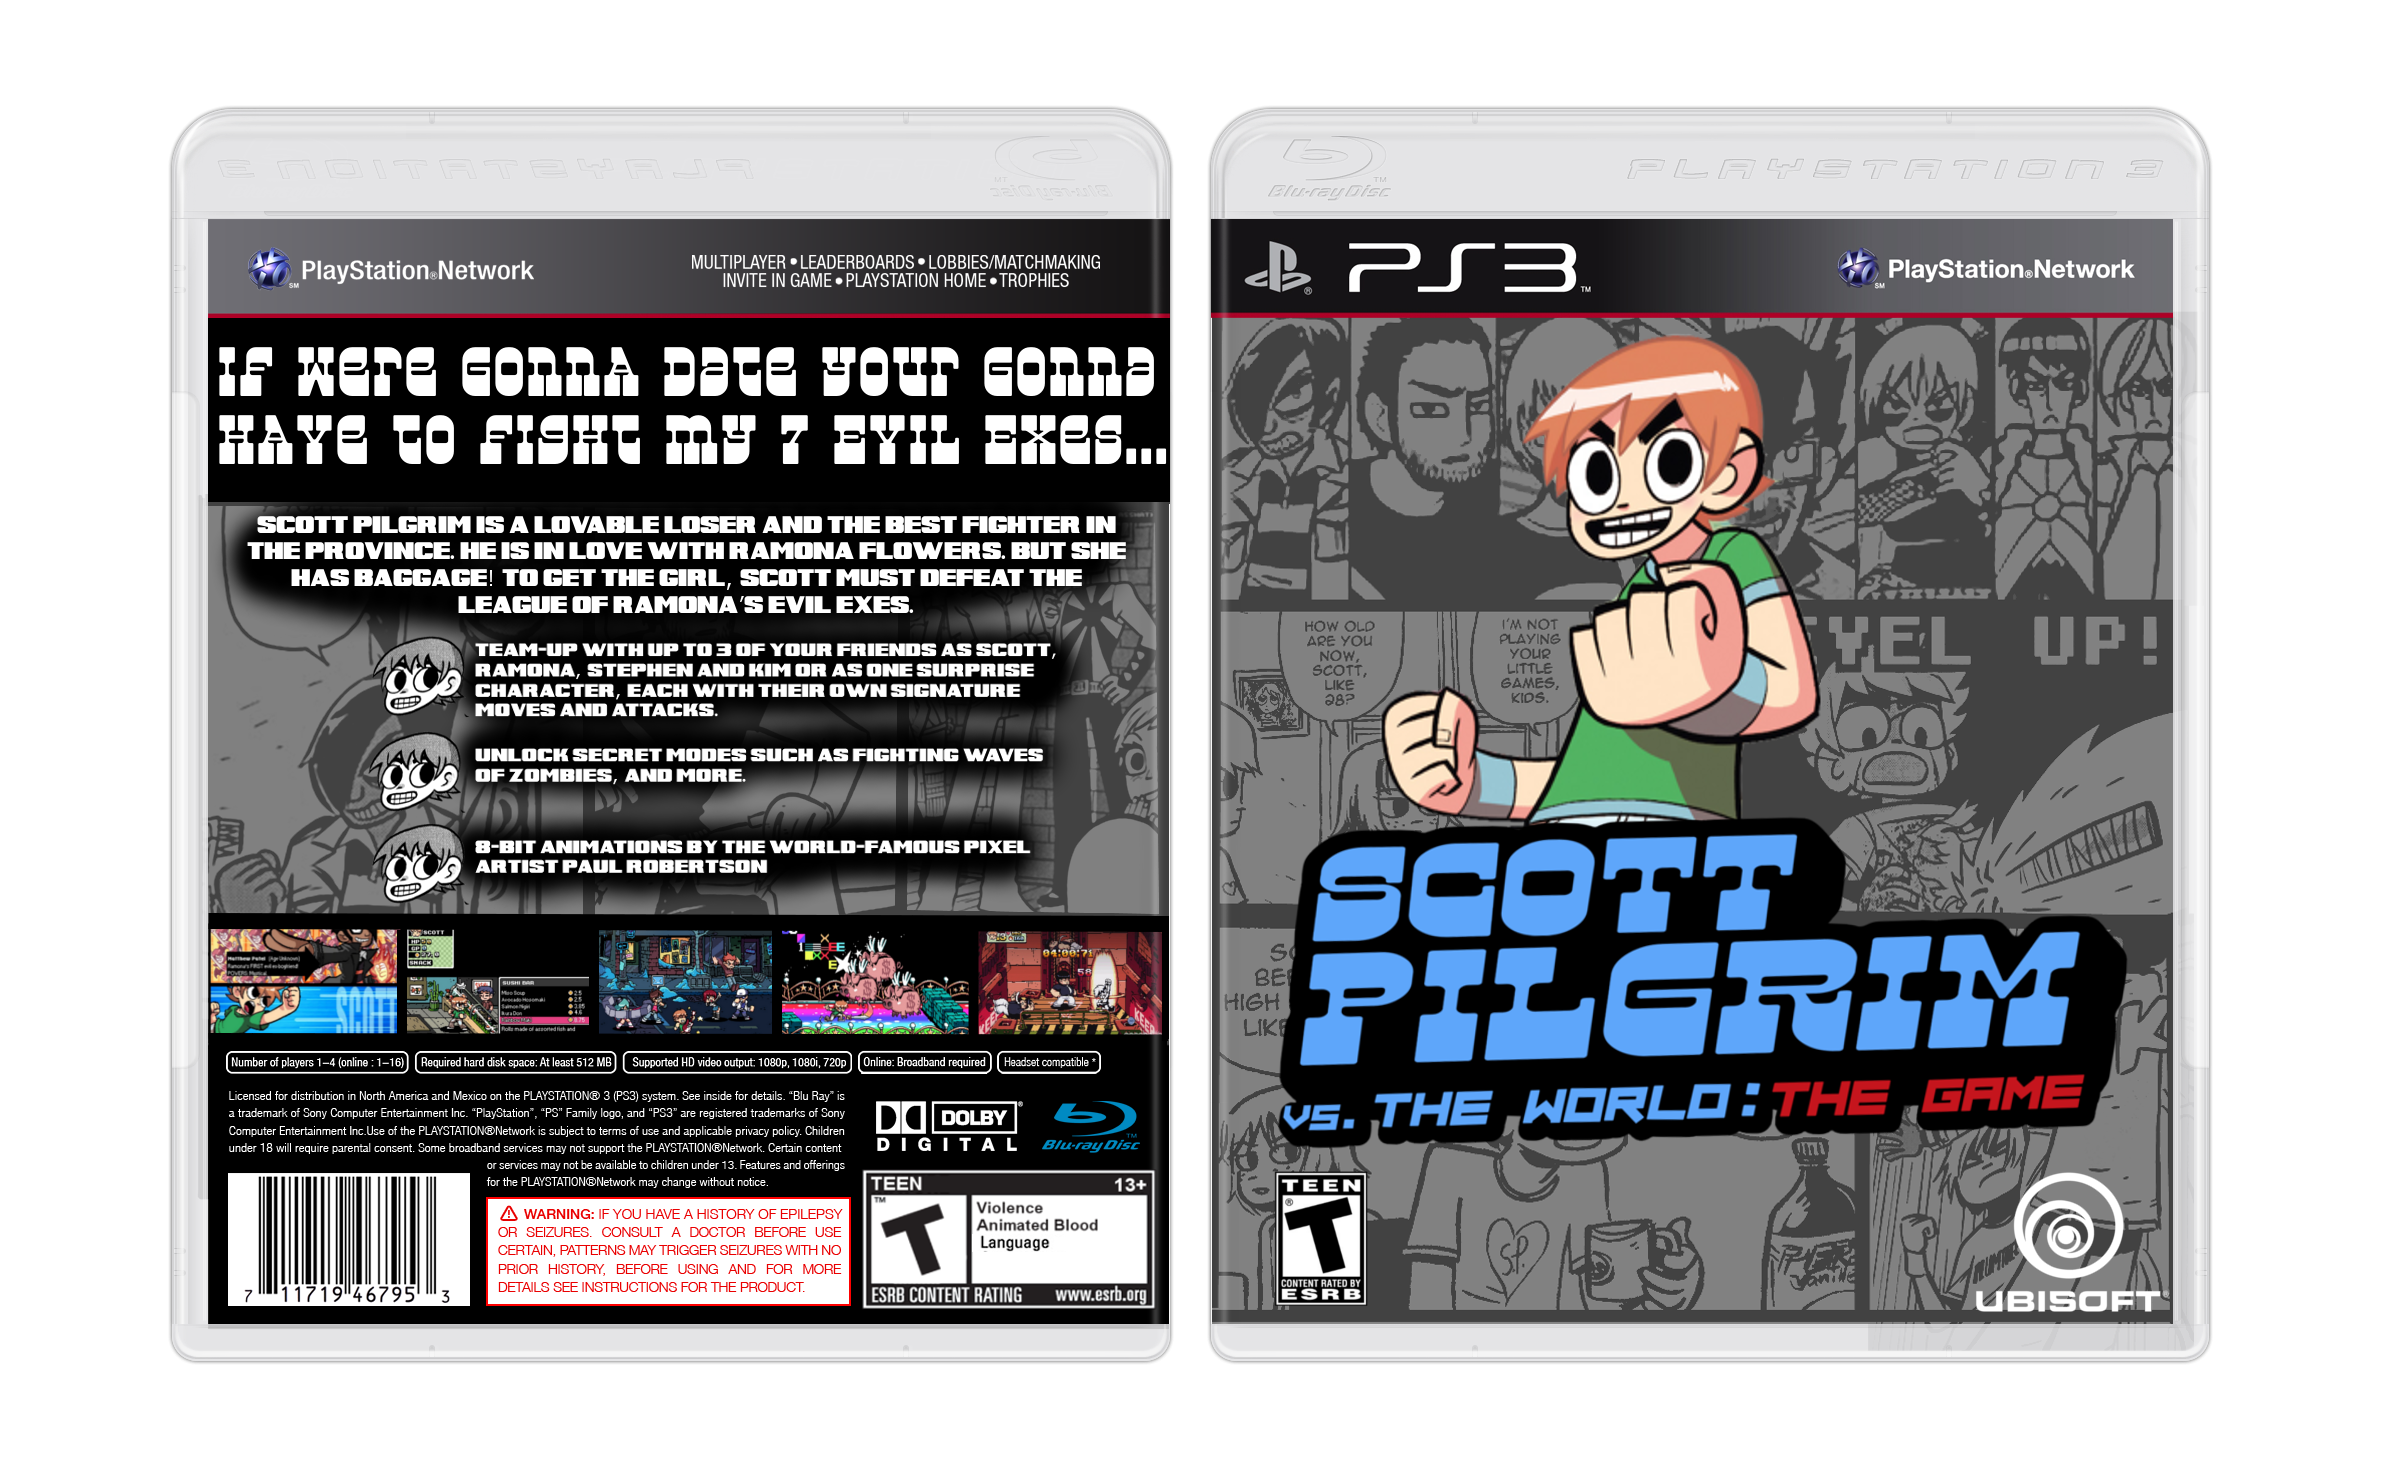 Scott Pilgrim Vs. The World: The Game box cover